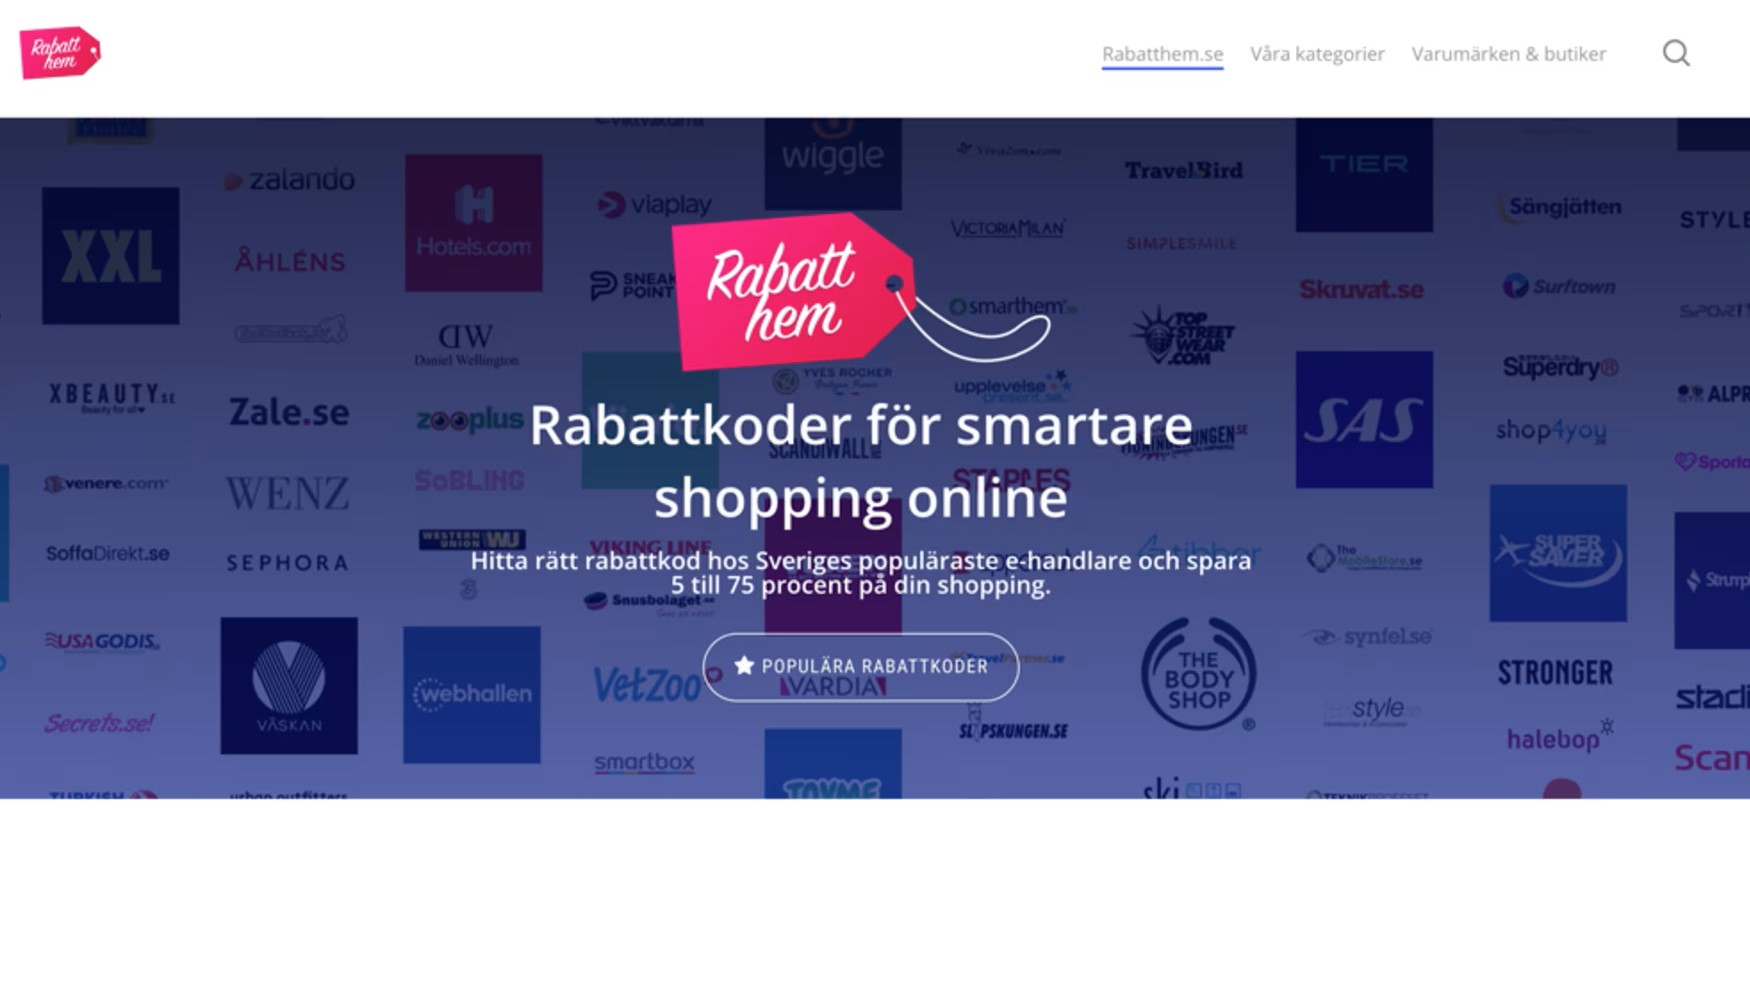 Rabatthem.se lanseras - ska hjälpa svenska konsumenter att spara pengar